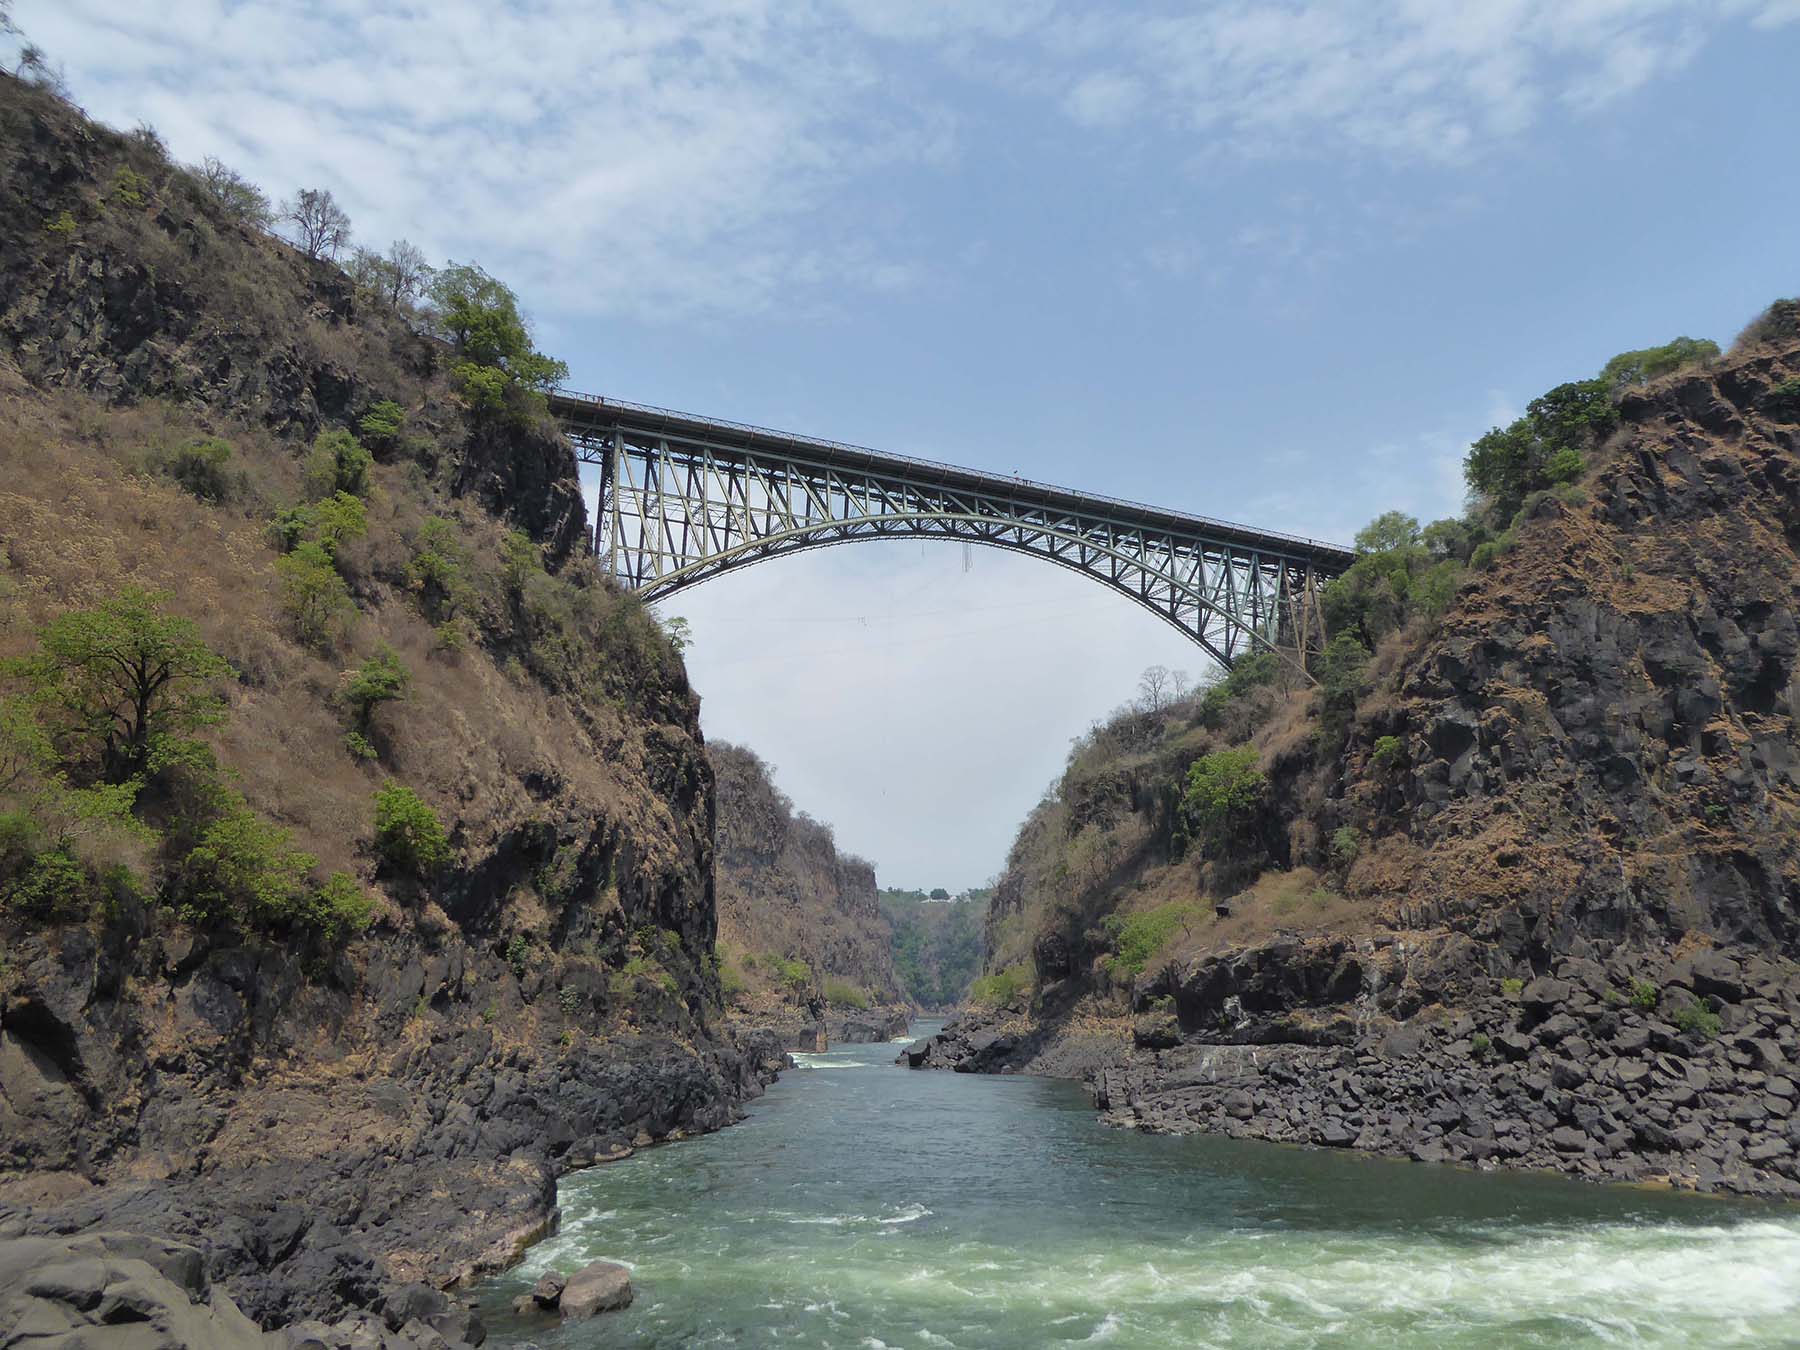 image of the victoria falls bridge crossing the zambezi river